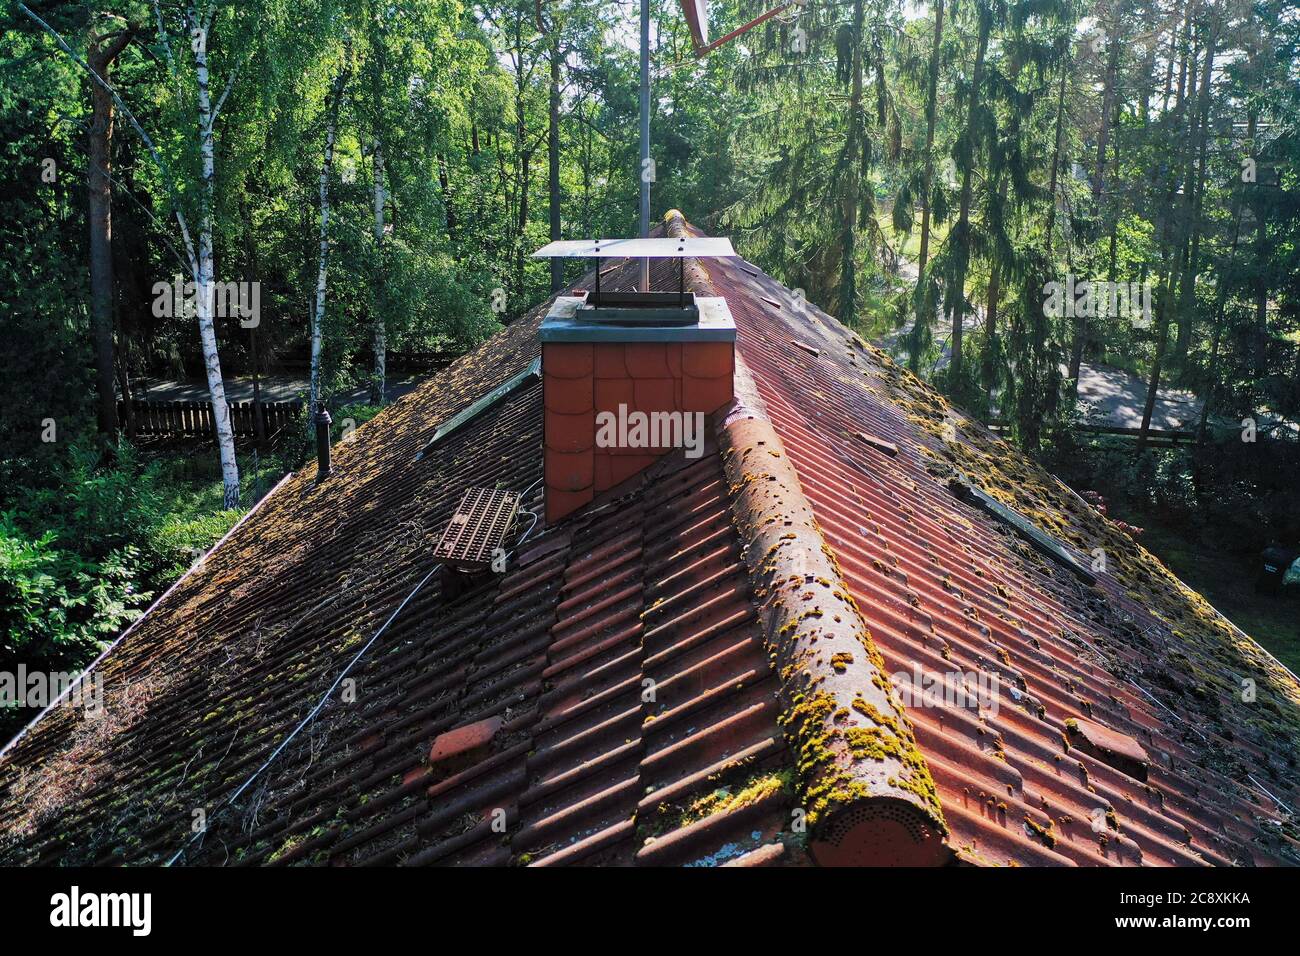 Bilder von der Inspektion und Kontrolle des Schornsteins und des Daches eines Einfamilienhauses mit Drohne, Luftaufnahme Stockfoto